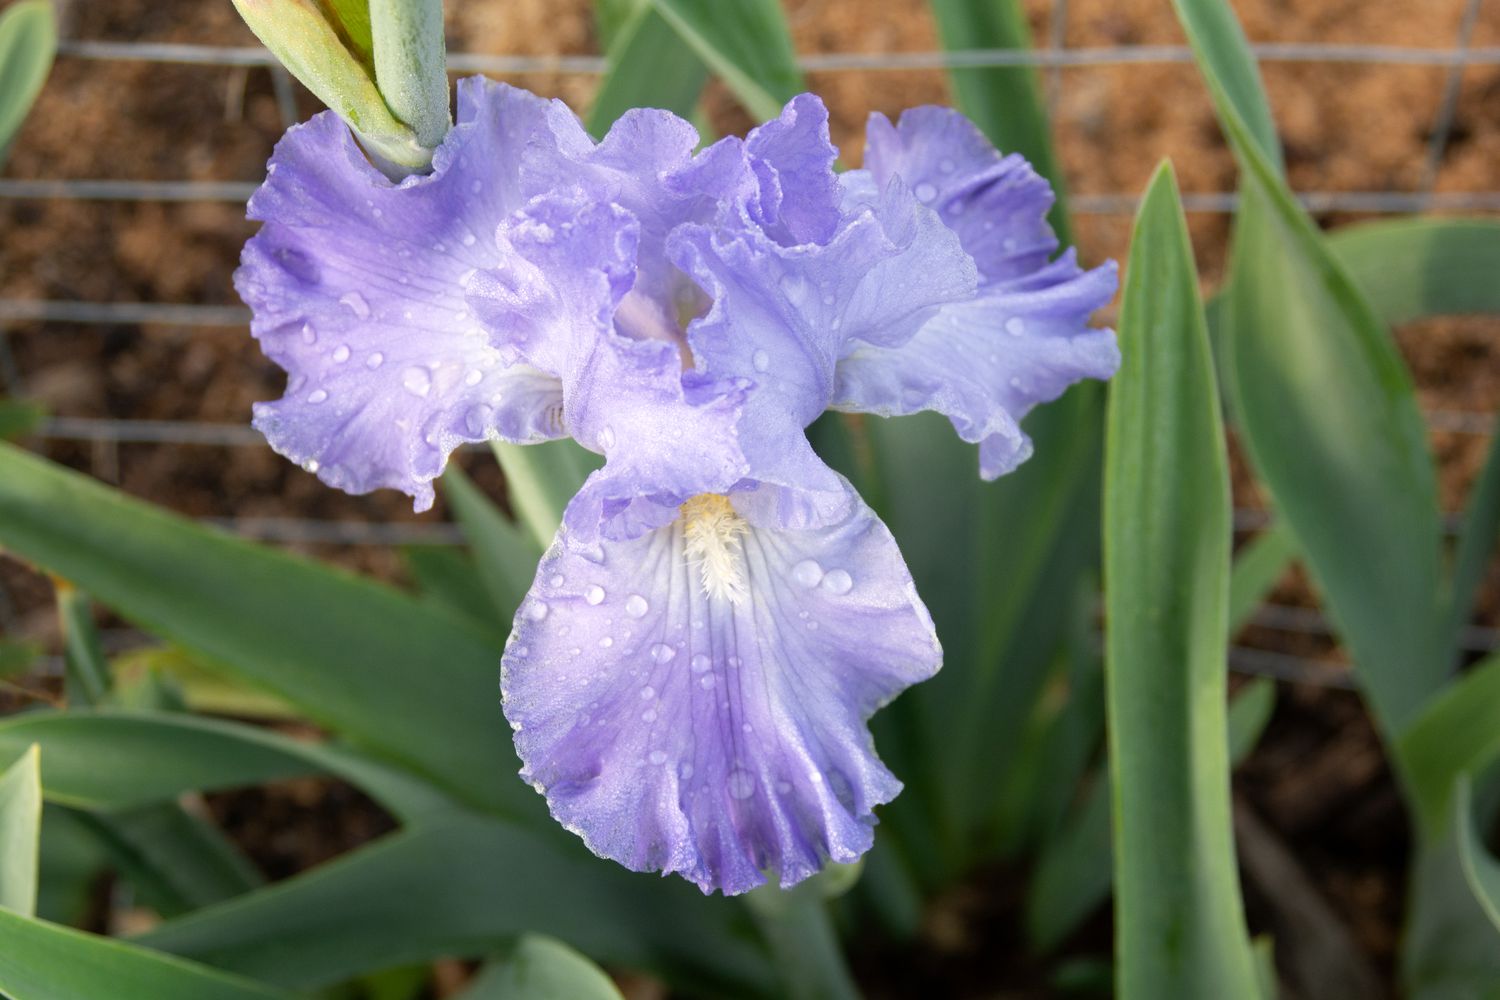 Comment diviser les plantes d’iris barbus